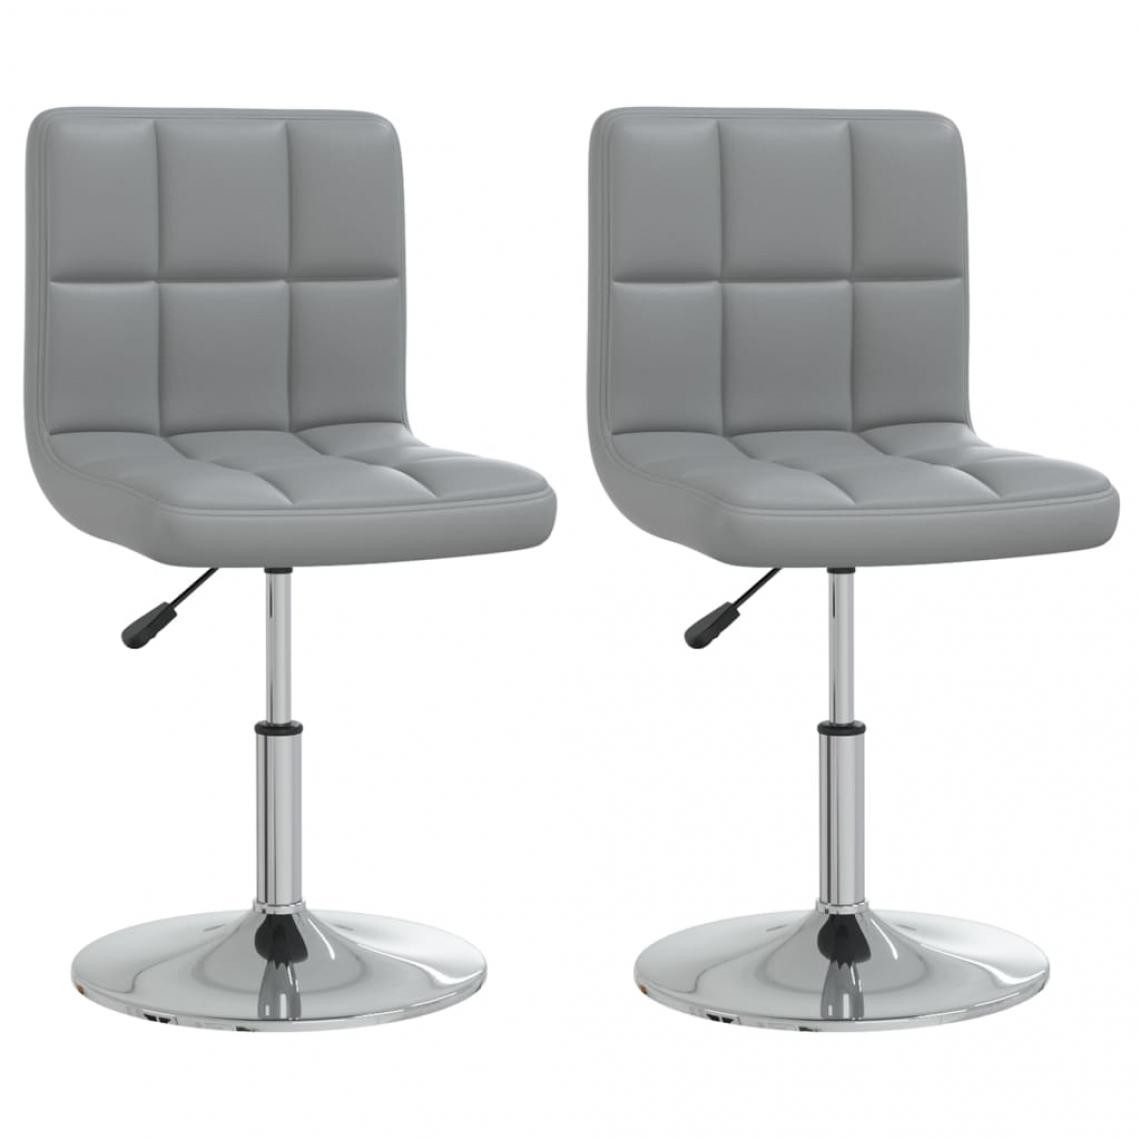 Decoshop26 - Lot de 2 chaises de salle à manger cuisine design contemporain similicuir gris CDS020592 - Chaises